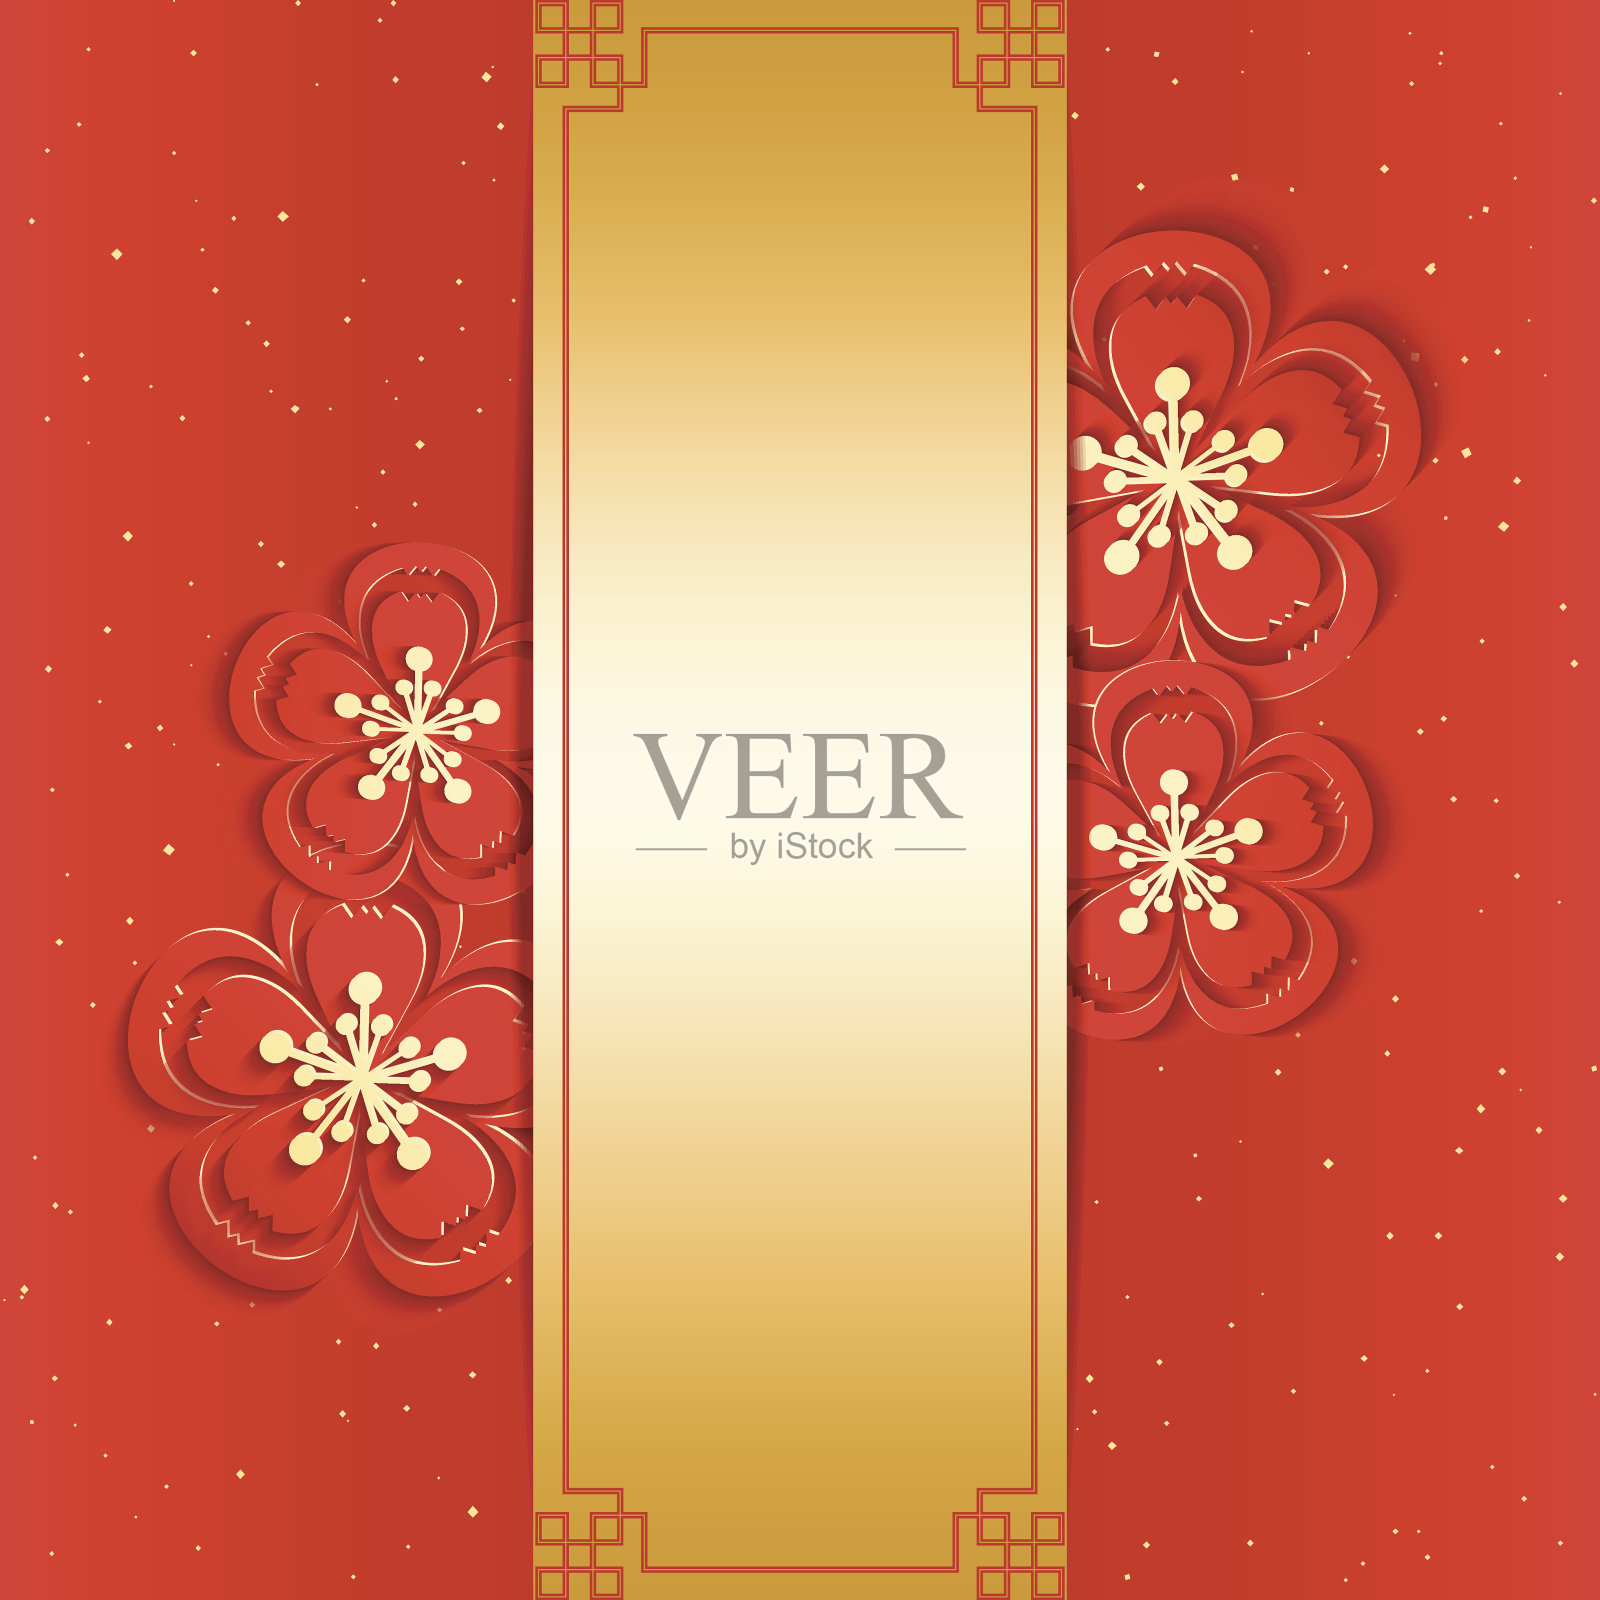 简单而美丽的中国新年贺卡设计模板素材